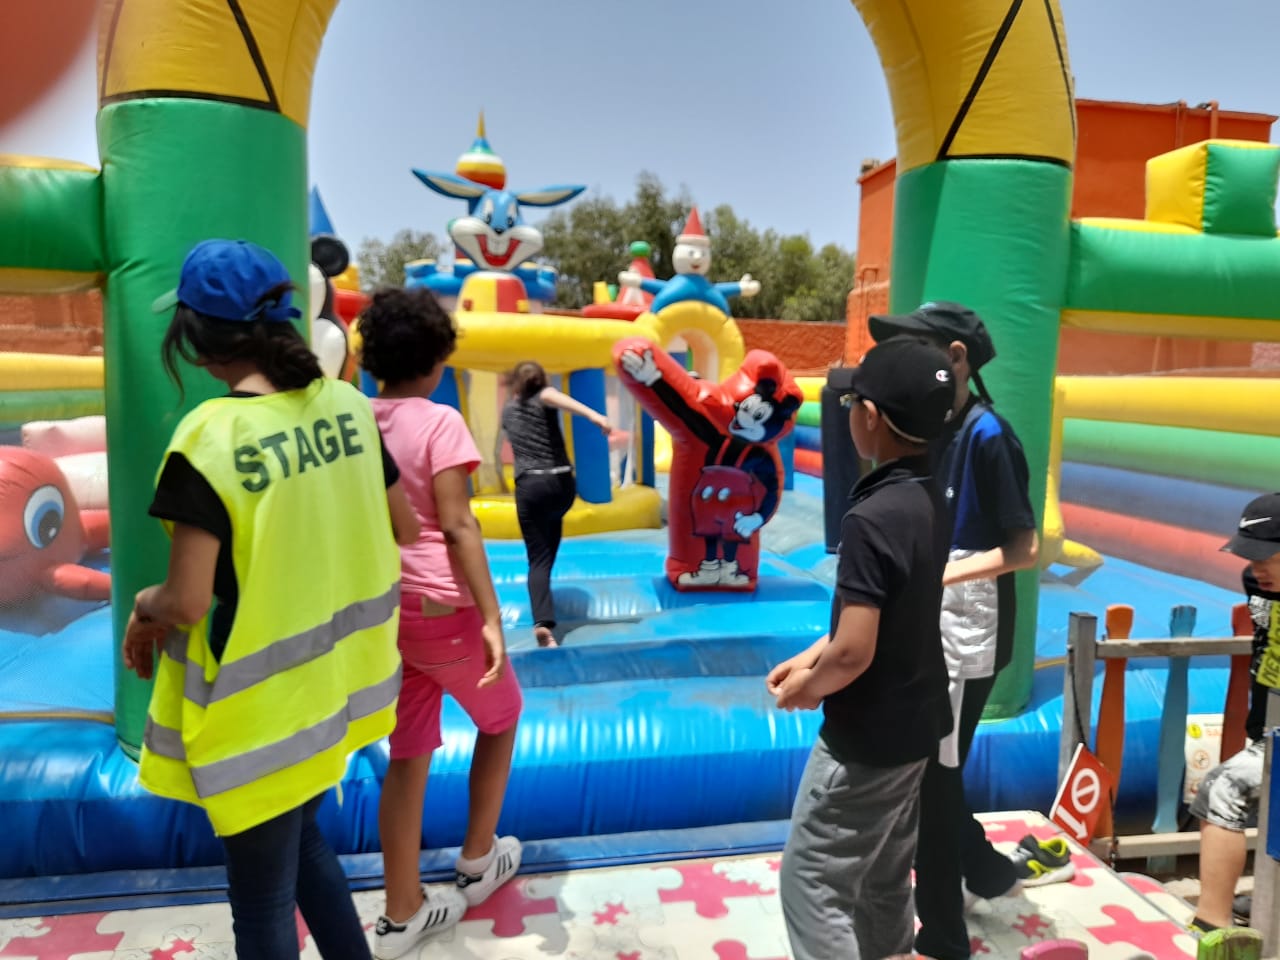 الدار البيضاء.. خرجة ترفيهية وتربوية لفائدة الأطفال في وضعية إعاقة وتلاميذ مؤسسة إبن نصير